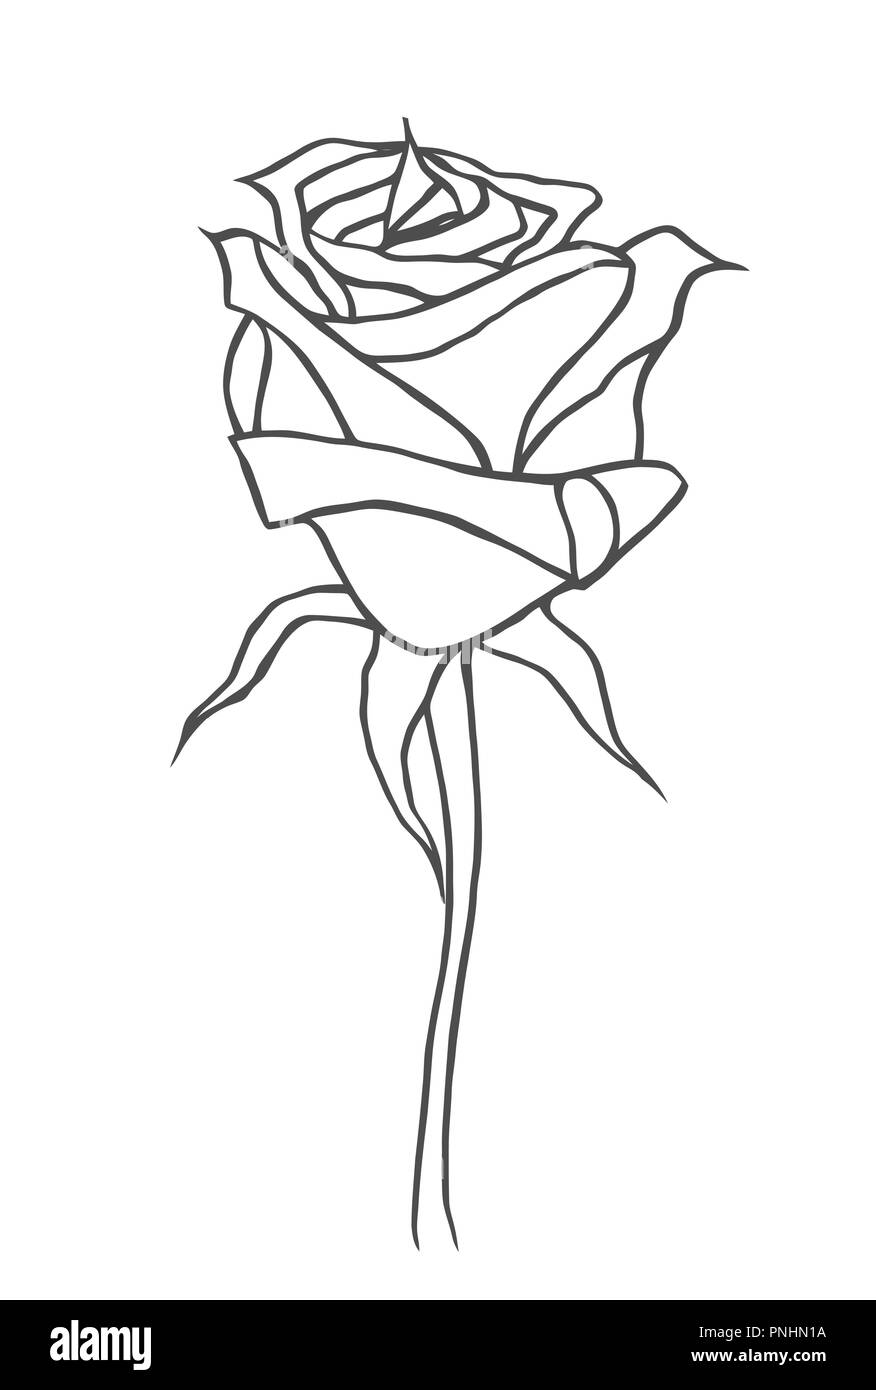 Grafik, Zeichnung. Rose, Logo, Zeichnung Vektorgrafiken mit Blumenmuster  für Design. Natürliches Design mit Blumenmuster Stock-Vektorgrafik - Alamy